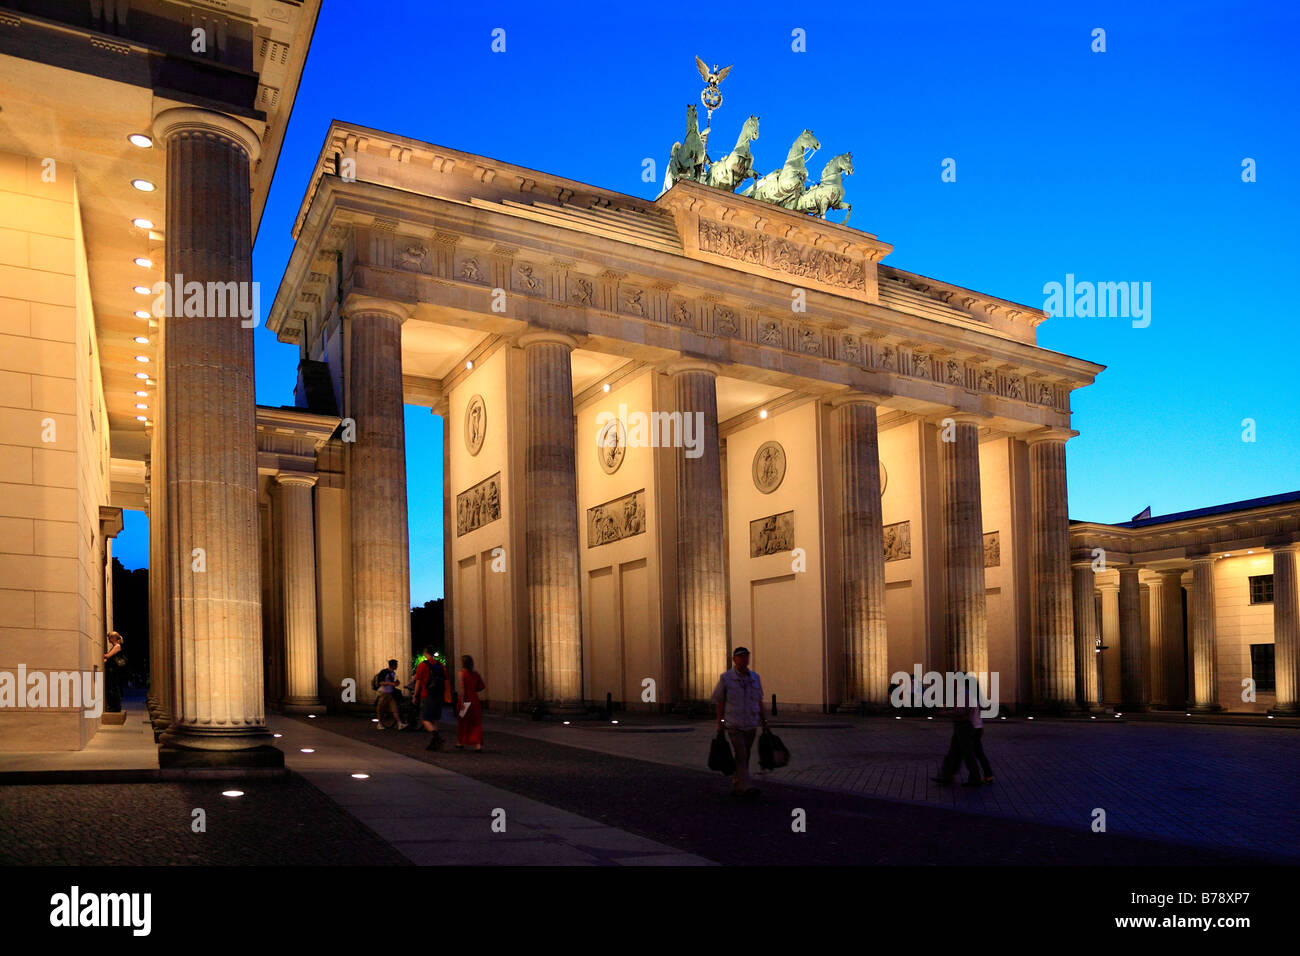 Brandenburger Tor ou Porte de Brandebourg, de courts au crépuscule, Pariser Platz, Bezirk Mitte ou Région centrale, Berlin, Allemagne, Banque D'Images